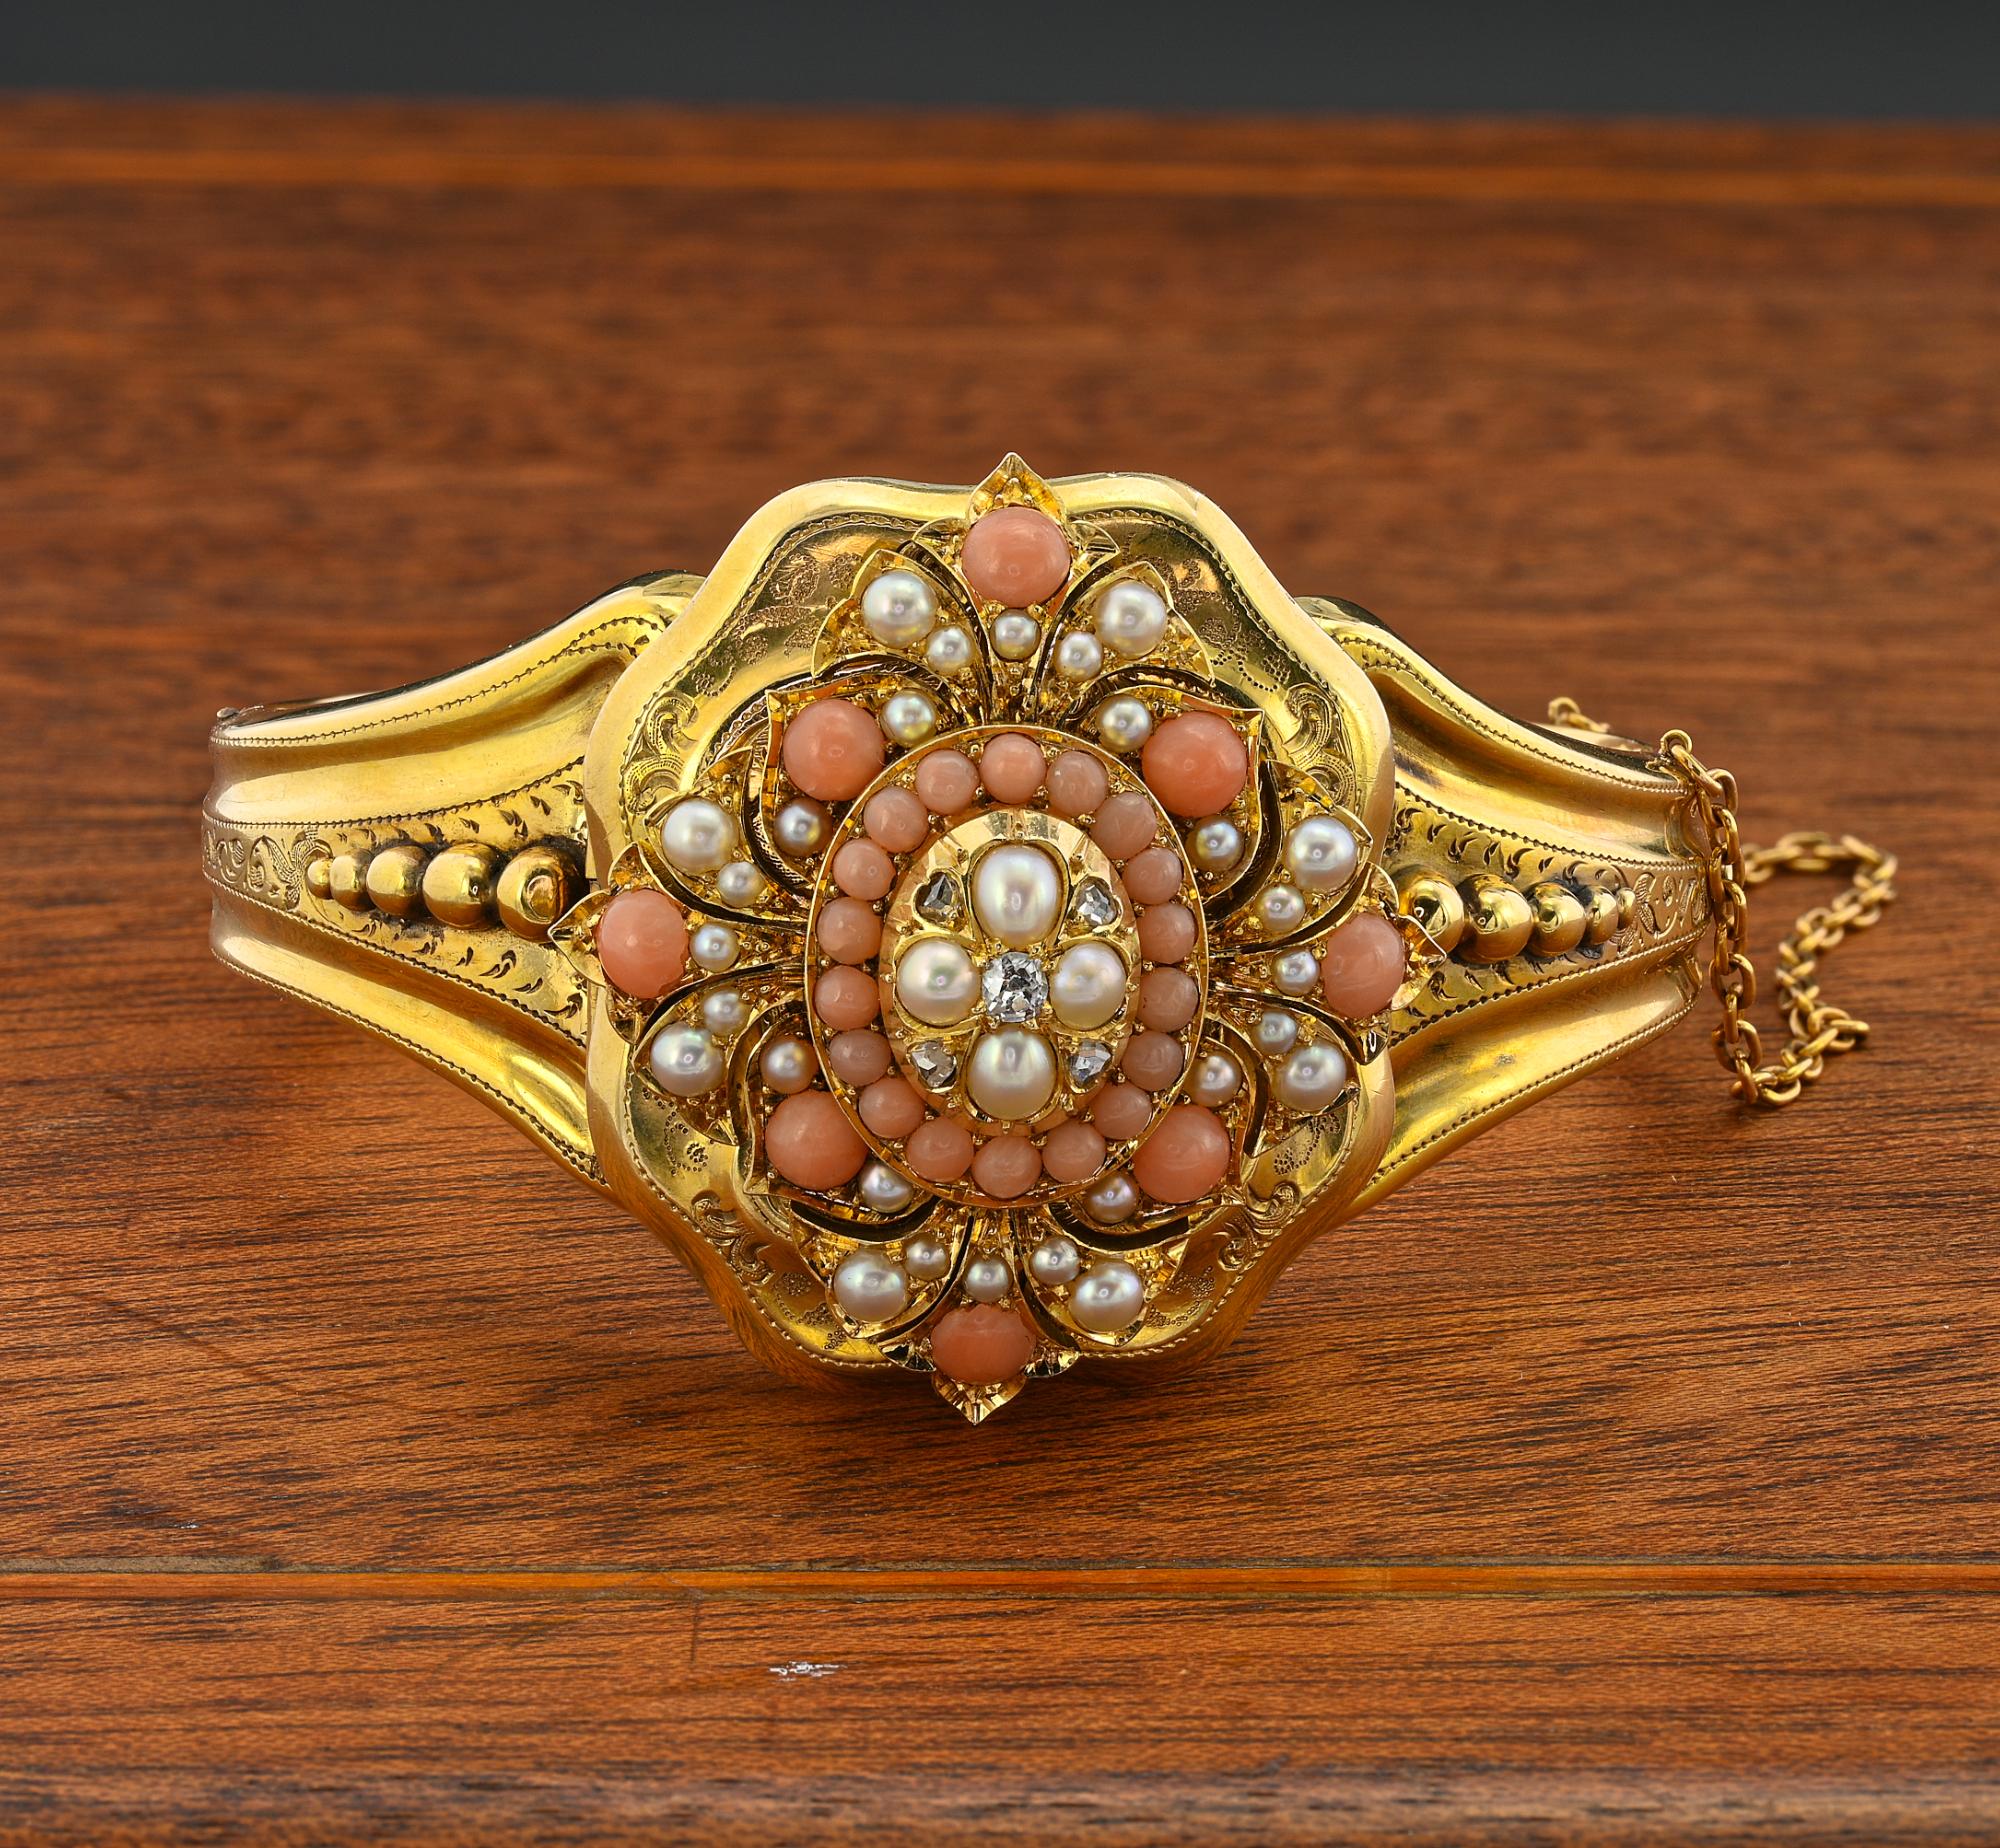 Fascinant exemple romantique de bracelet ancien, gravé à l'intérieur le 10 avril 1856 - fait à la main en or massif 18 KT - origine anglaise
Magnifique pièce centrale au design floral sculpté, décorée de perles fendues naturelles d'un éclat oriental